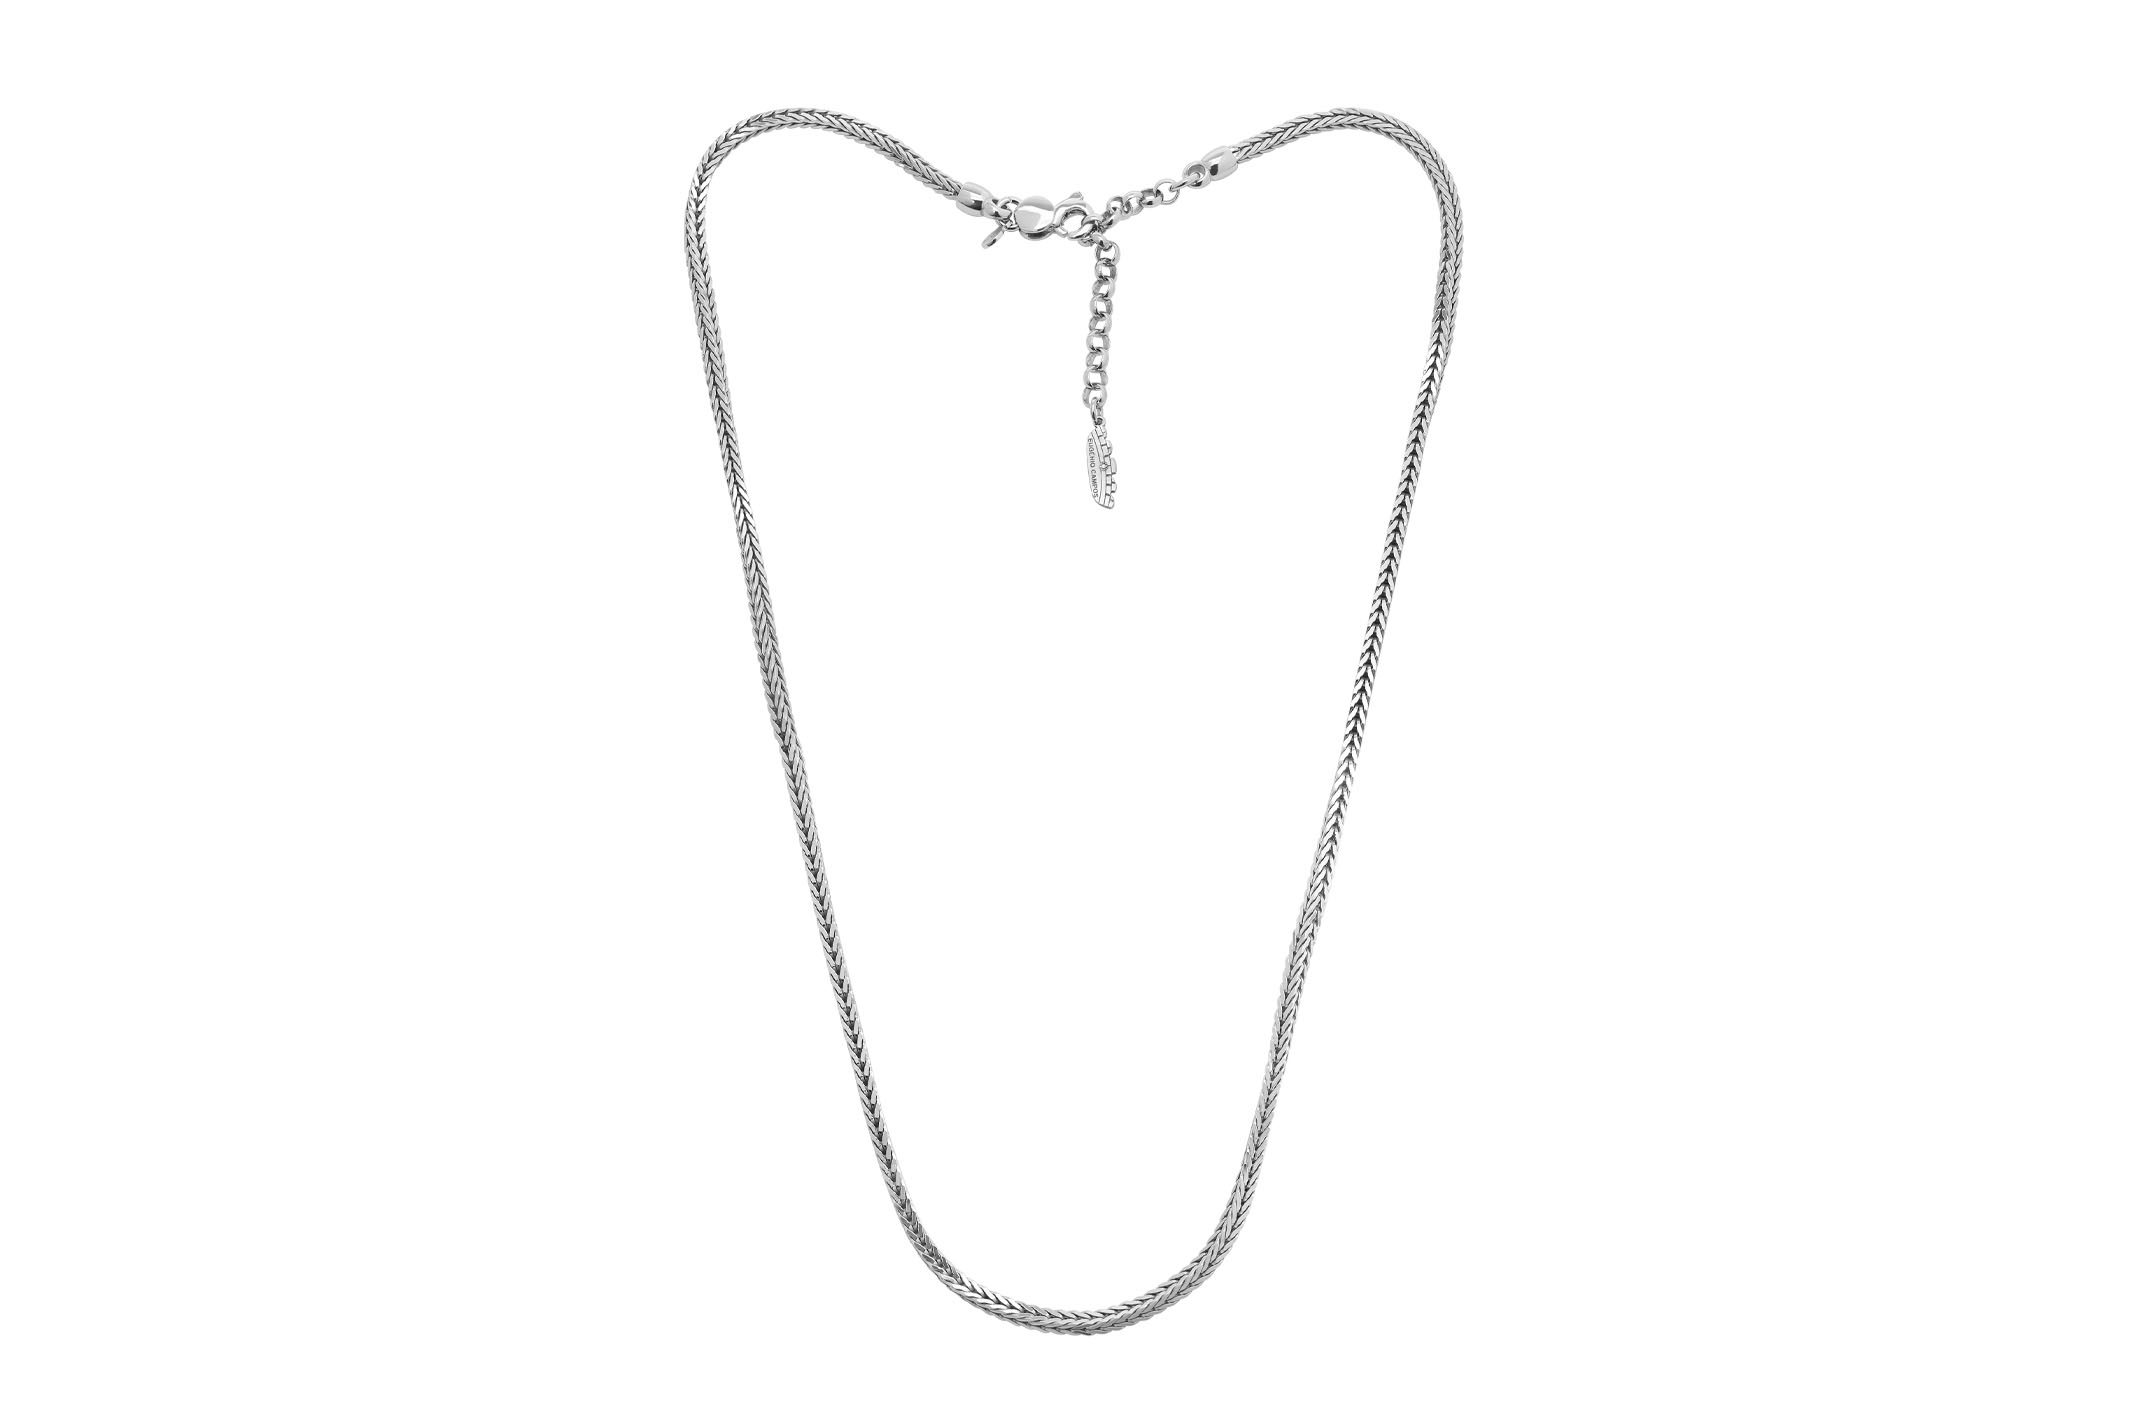 Joia: colar;Material: prata 925;Peso: 19.8 gr;Cor: branco;Medida: 48 cm + 5 cm